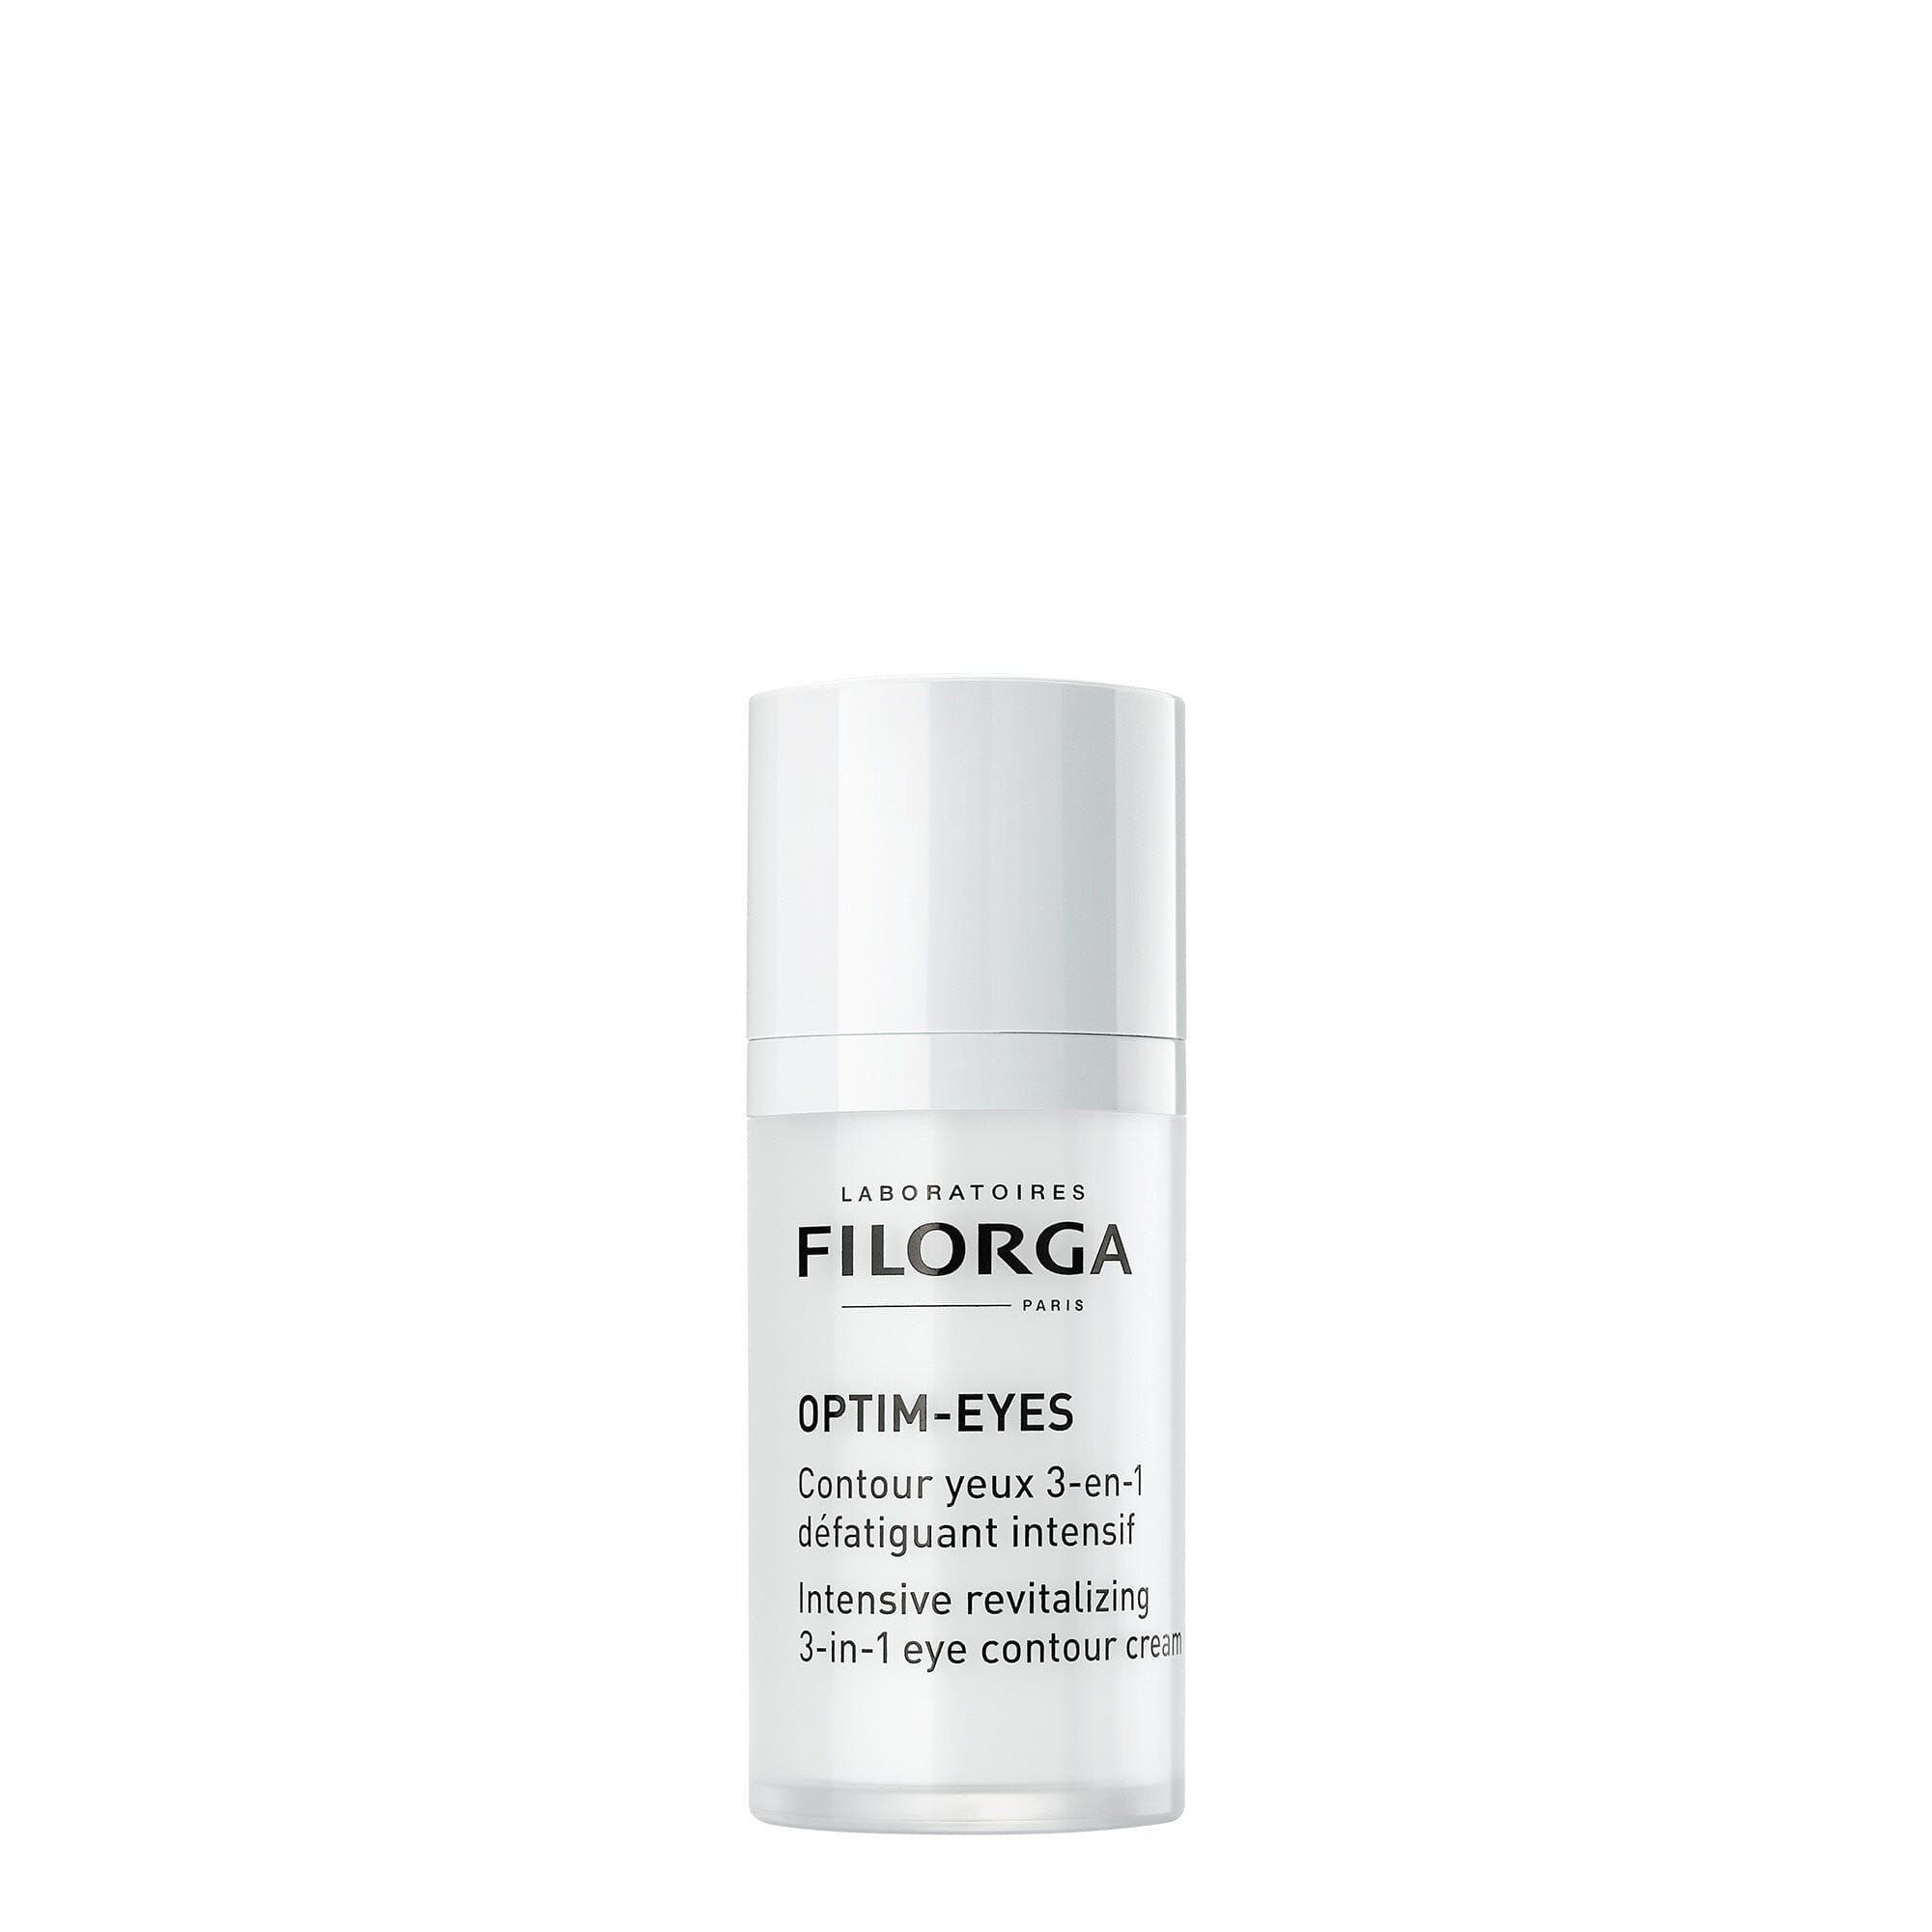 Filorga OPTIM-EYES Revitalizing Eye Contour Cream